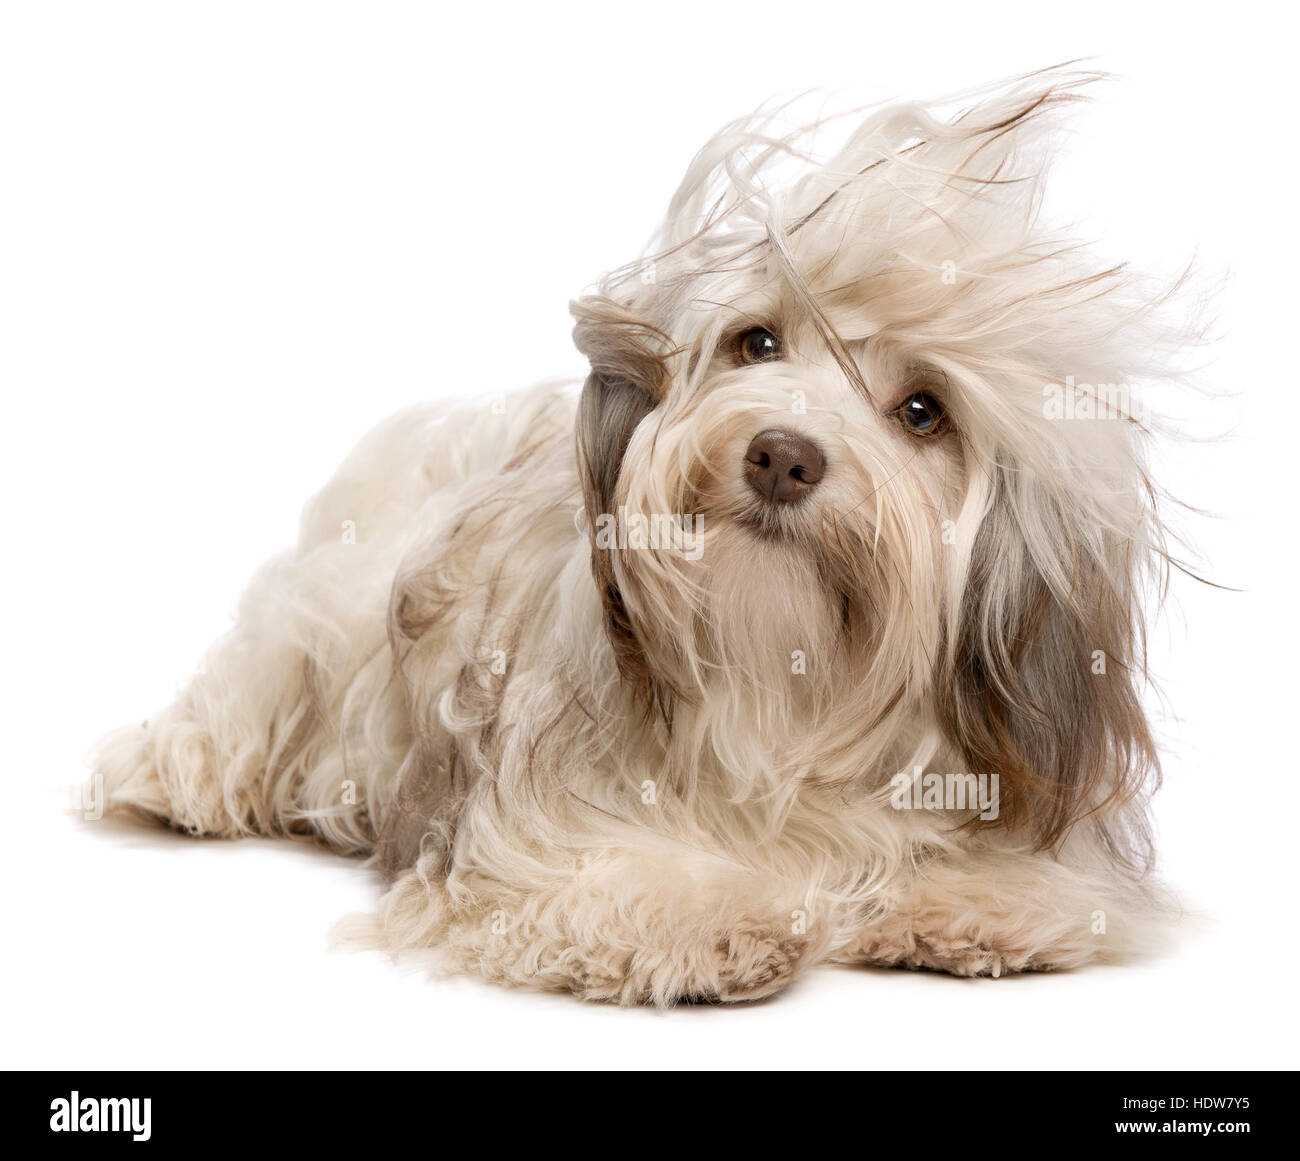 Chiot Bichon havanais de couleur chocolat cute dog lying in wind Banque D'Images